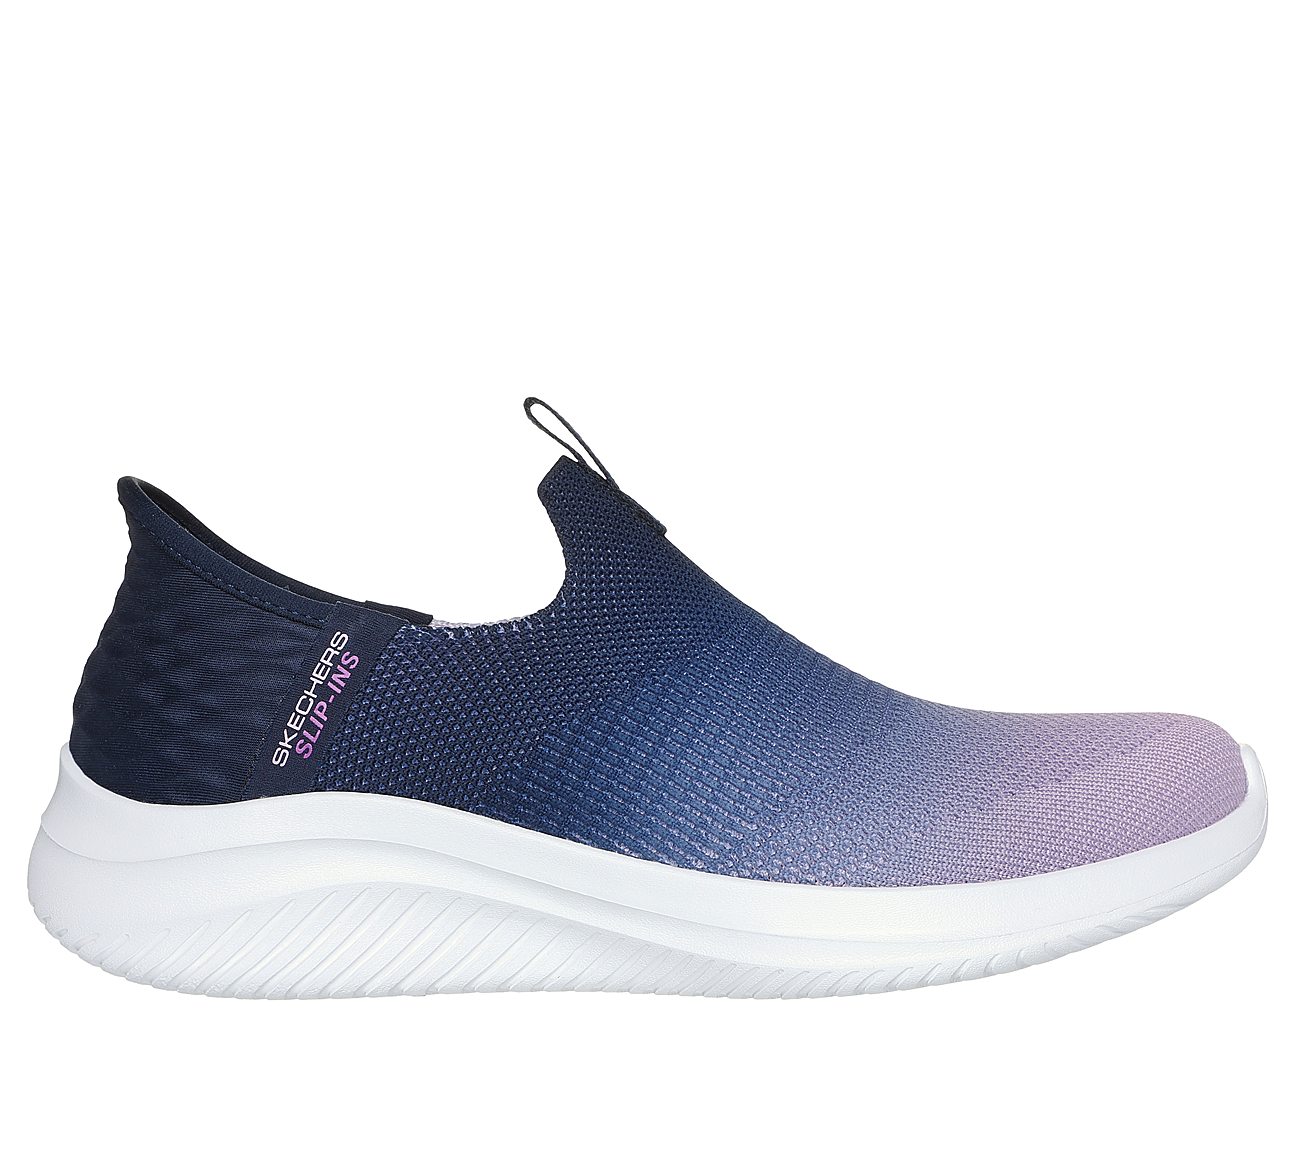 SKECHERS SLIP-INS: ULTRA FLEX 3.0 - BEAUTY BLEND, NAVY Footwear Lateral View